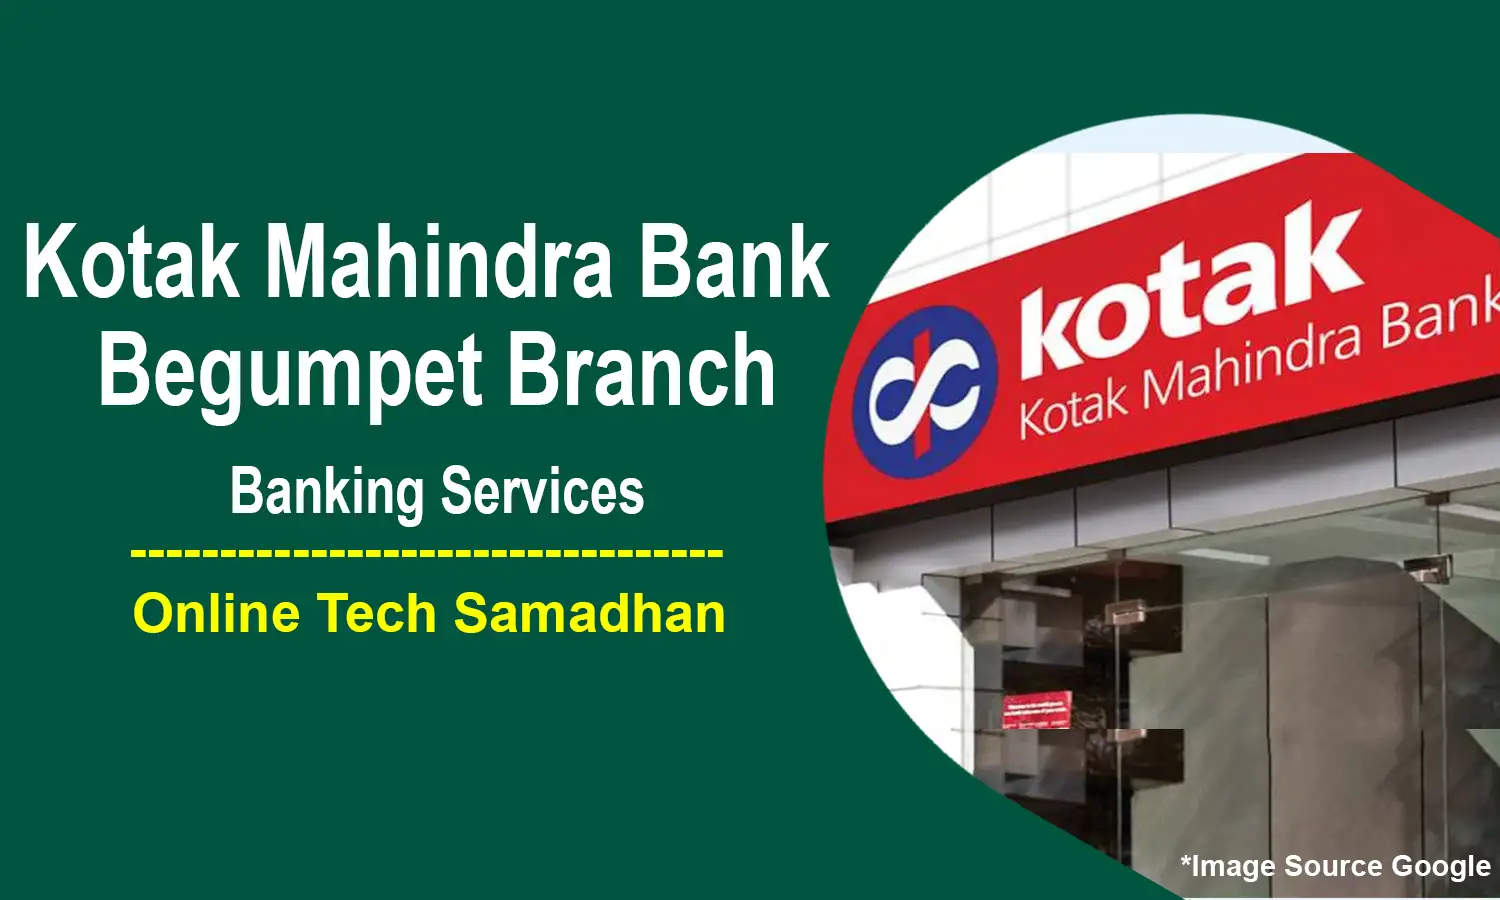 Kotak Mahindra Bank Begumpet